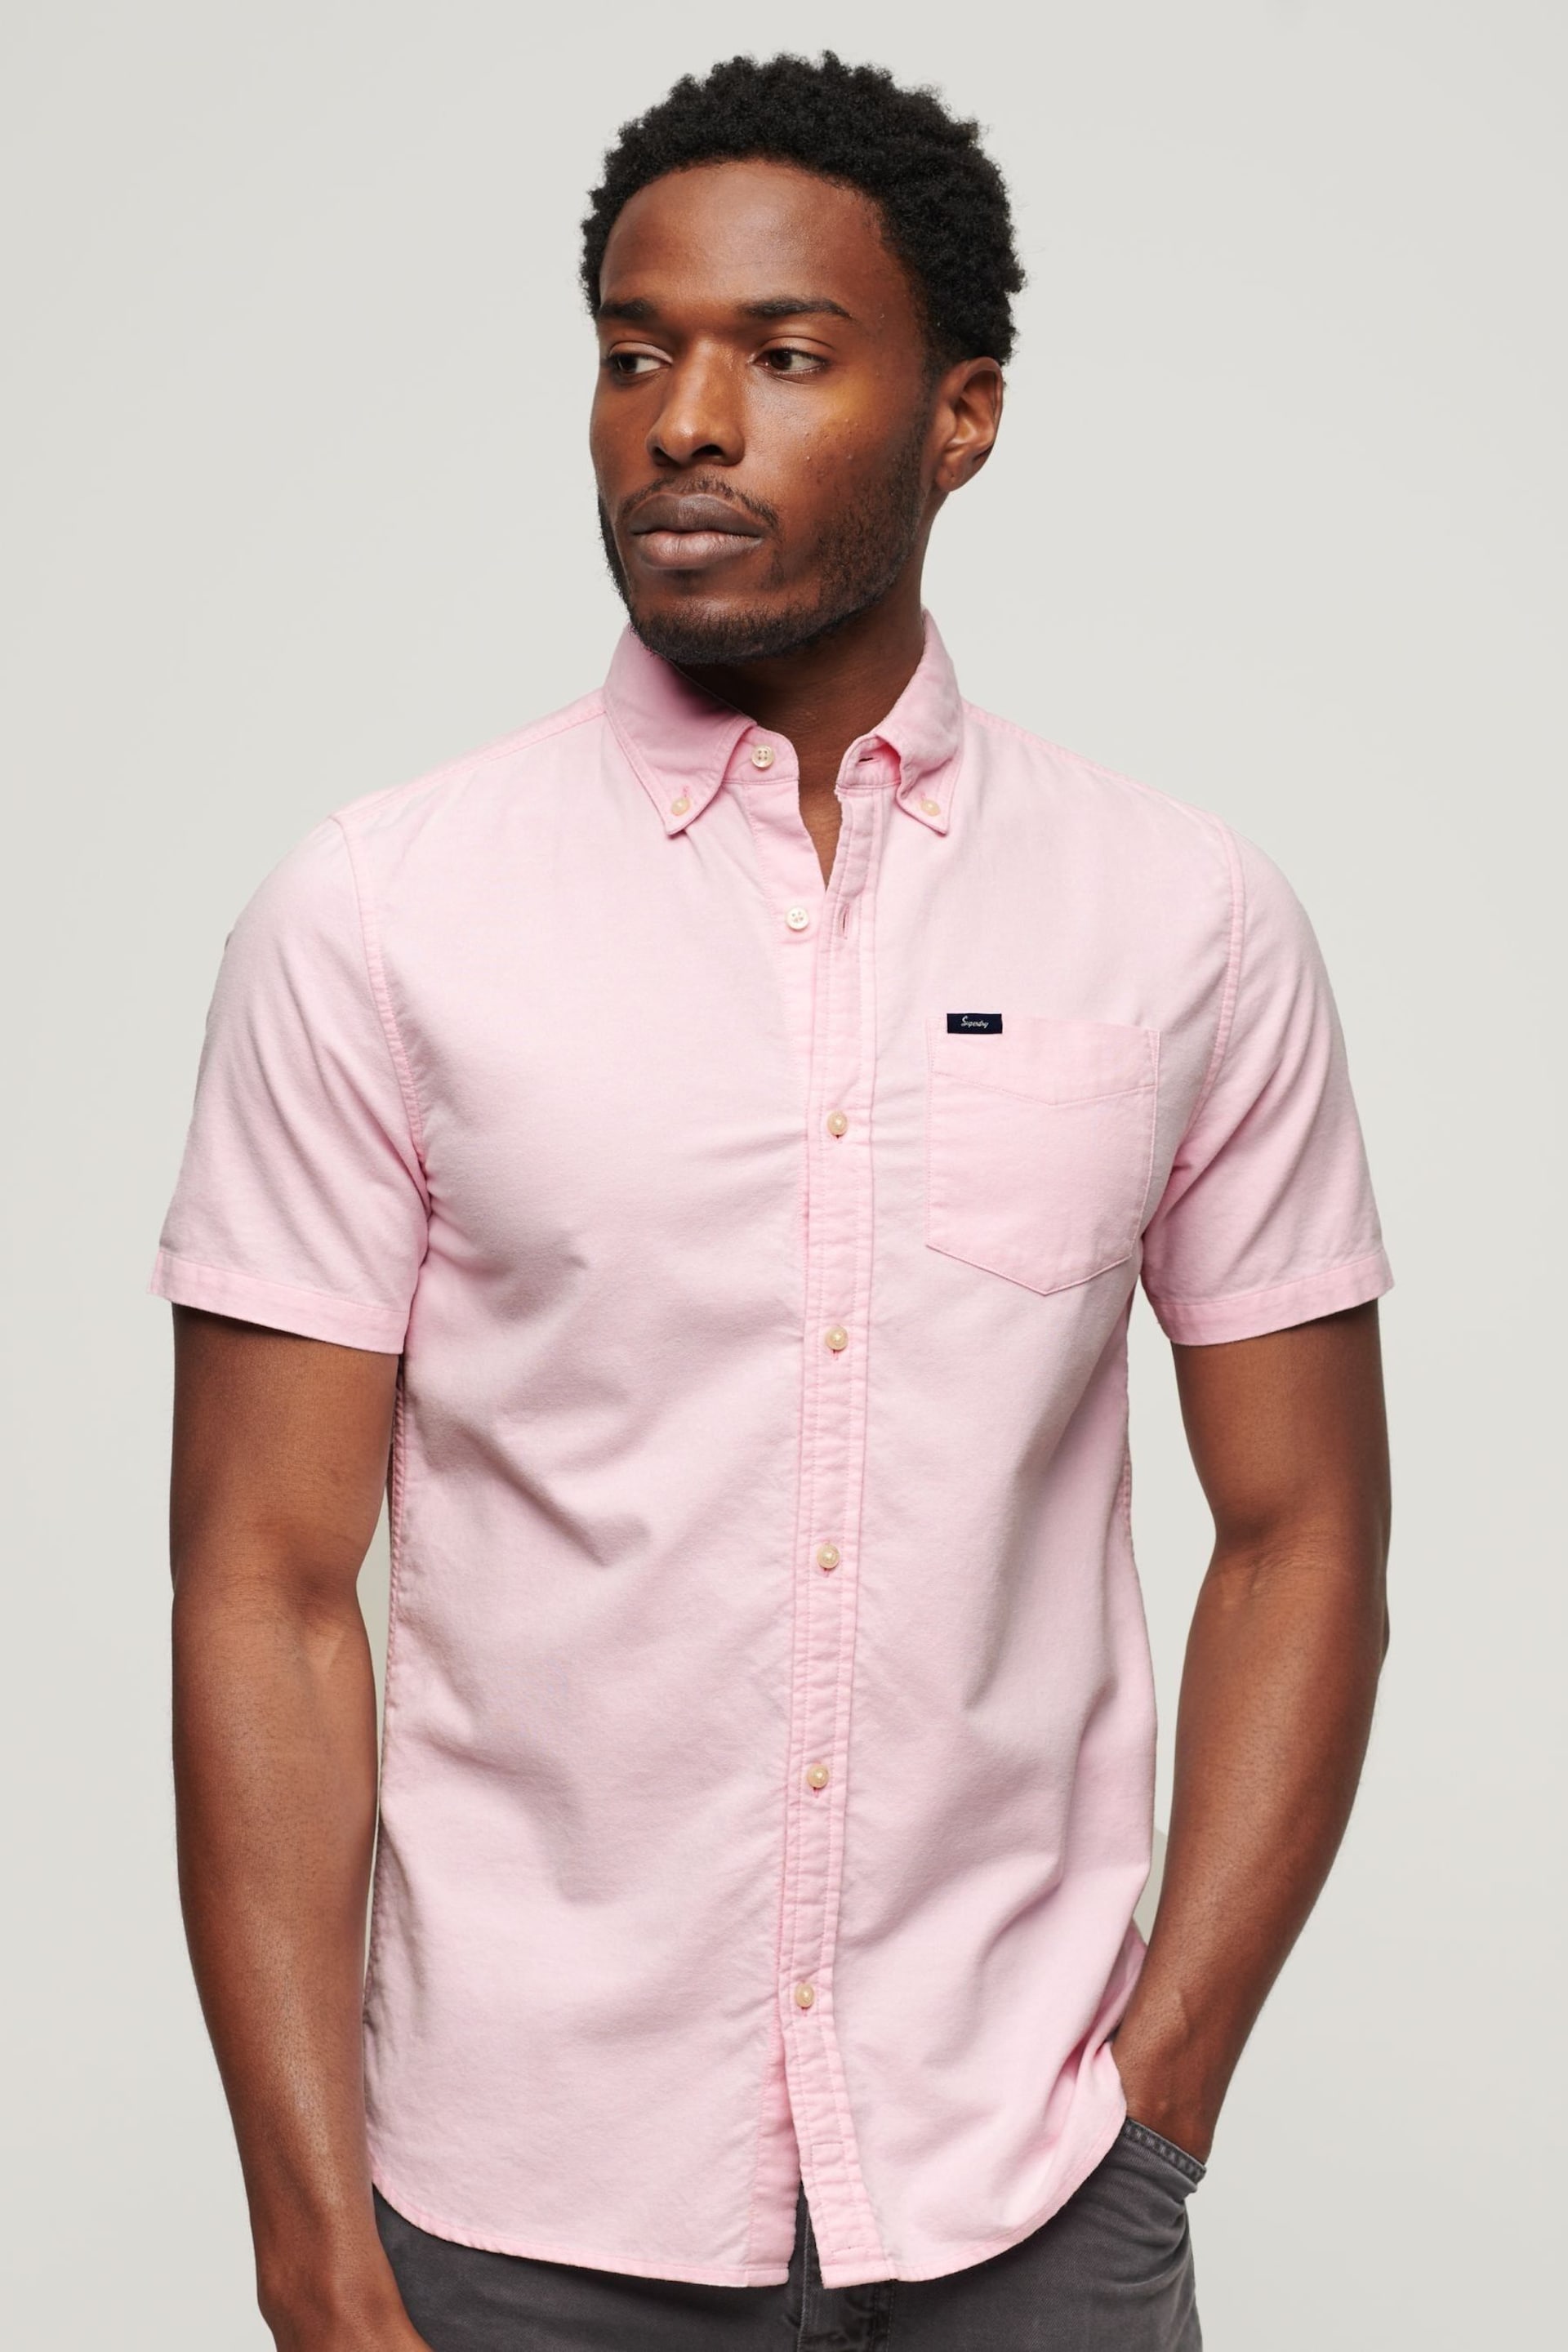 Superdry Pink Vintage Oxford Short Sleeve Shirt - Image 1 of 8